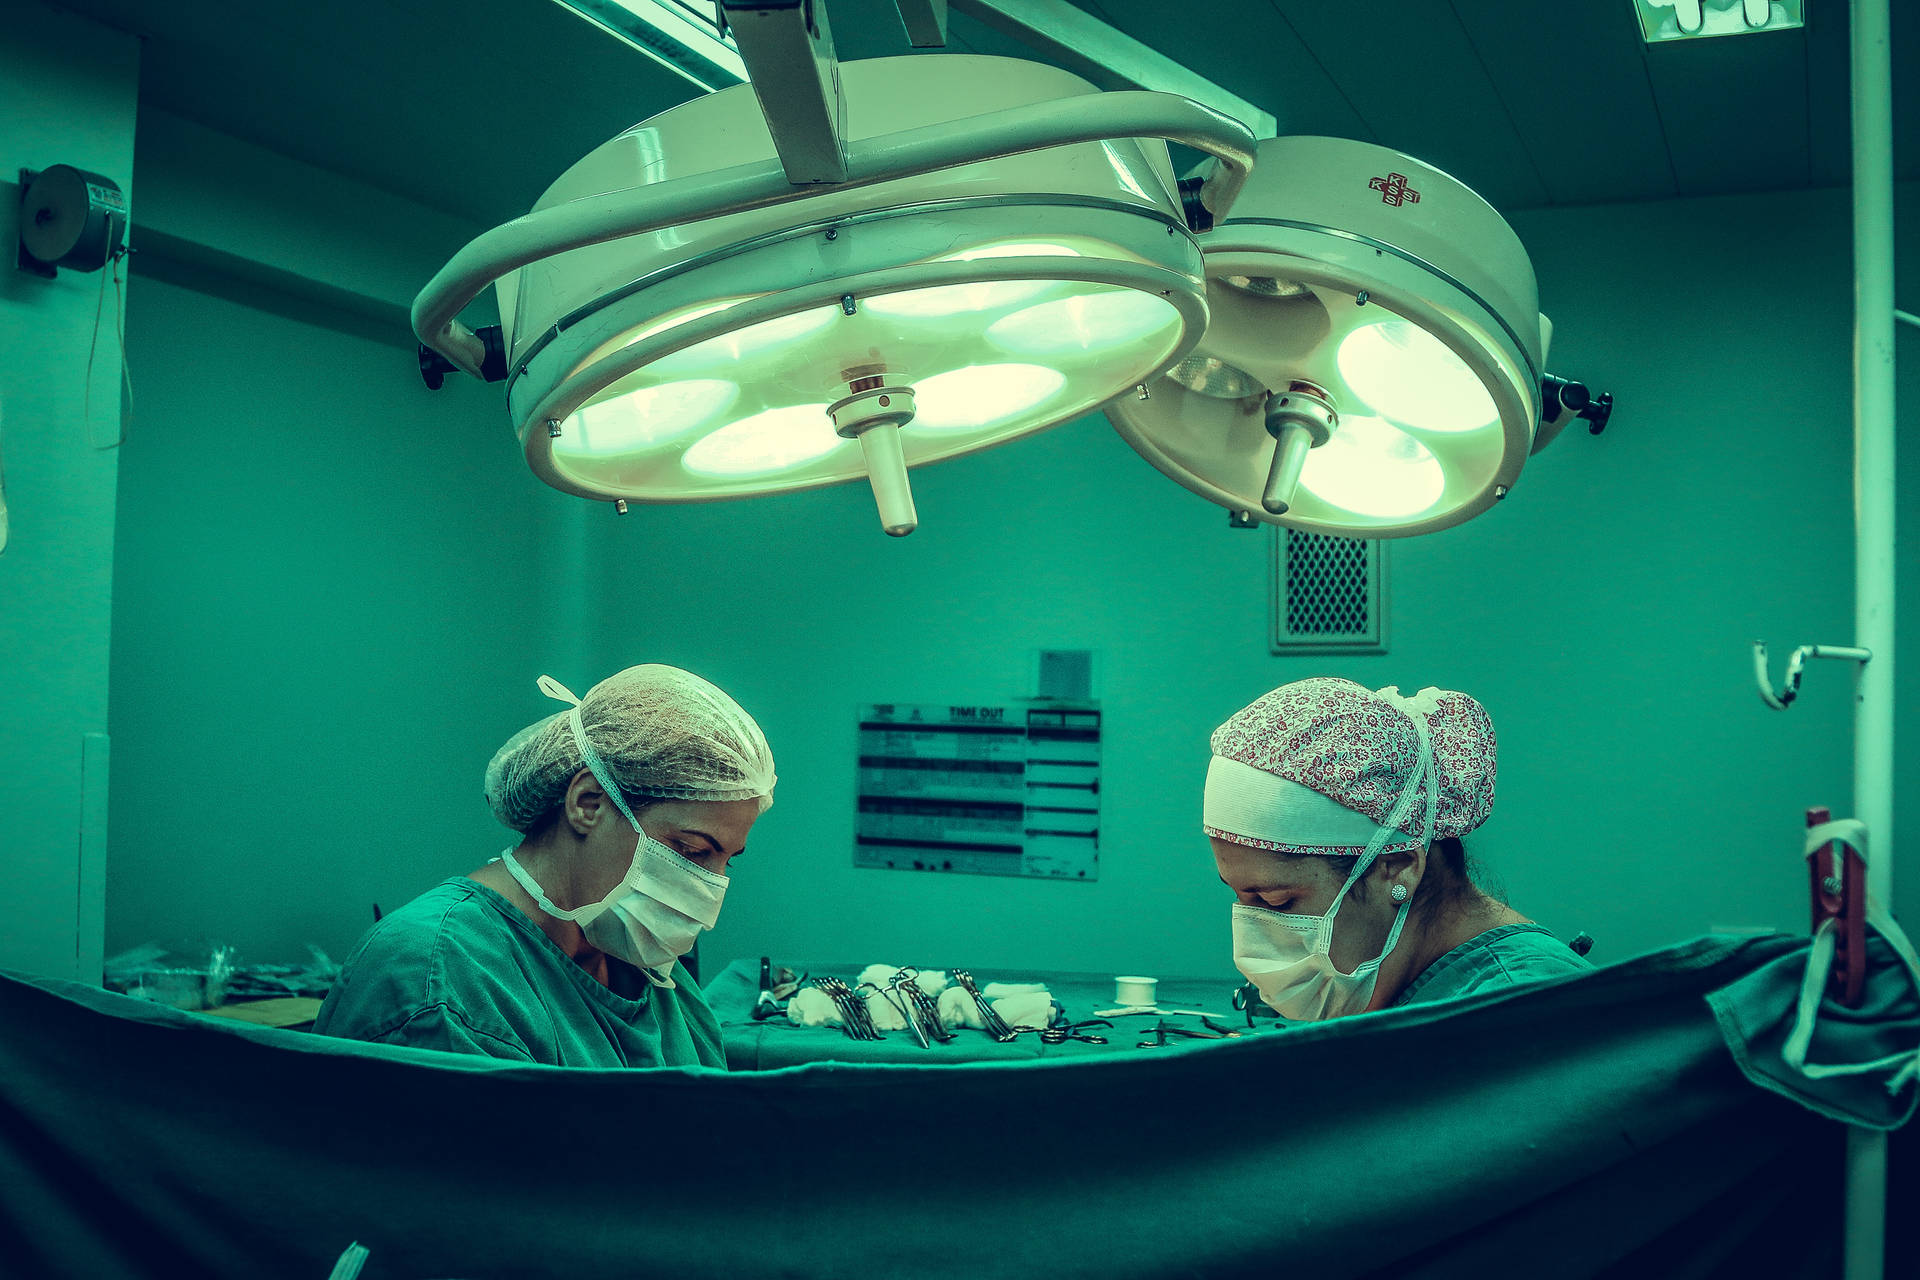 Zweichirurgen Operieren Auf Der Intensivstation. Wallpaper